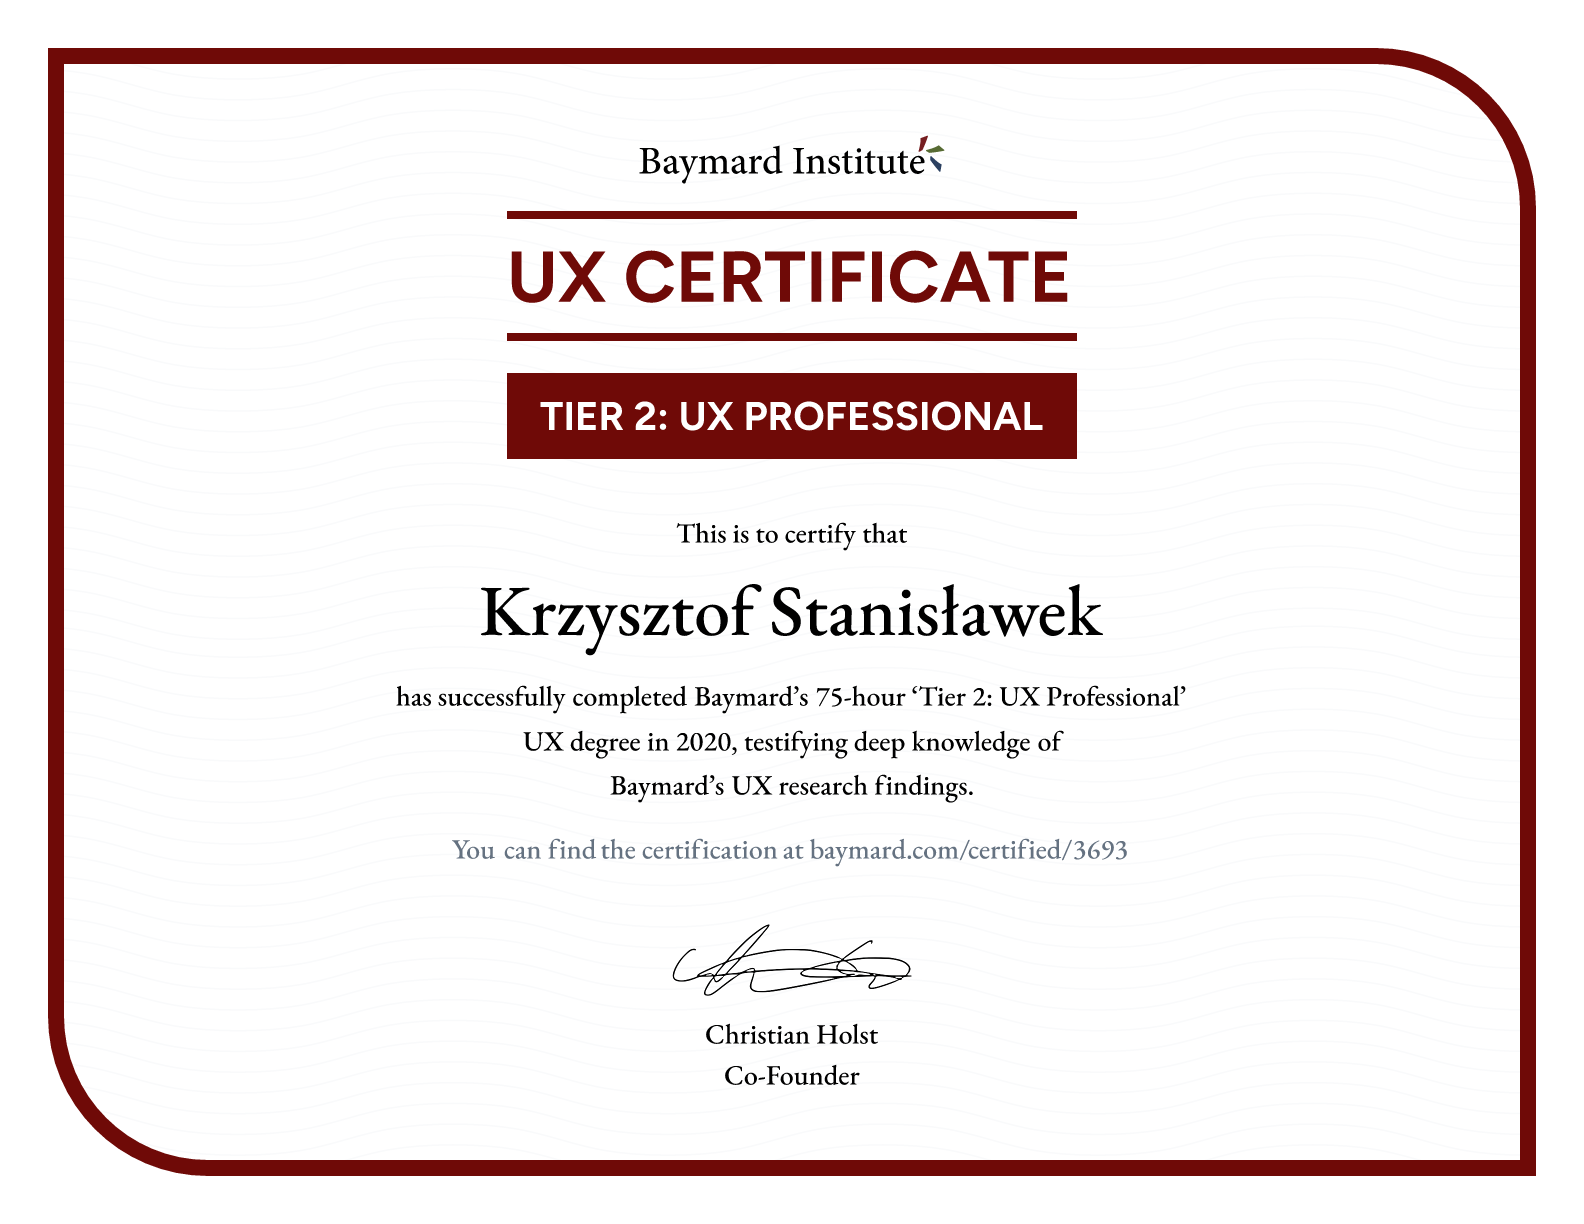 Krzysztof Stanisławek’s certificate